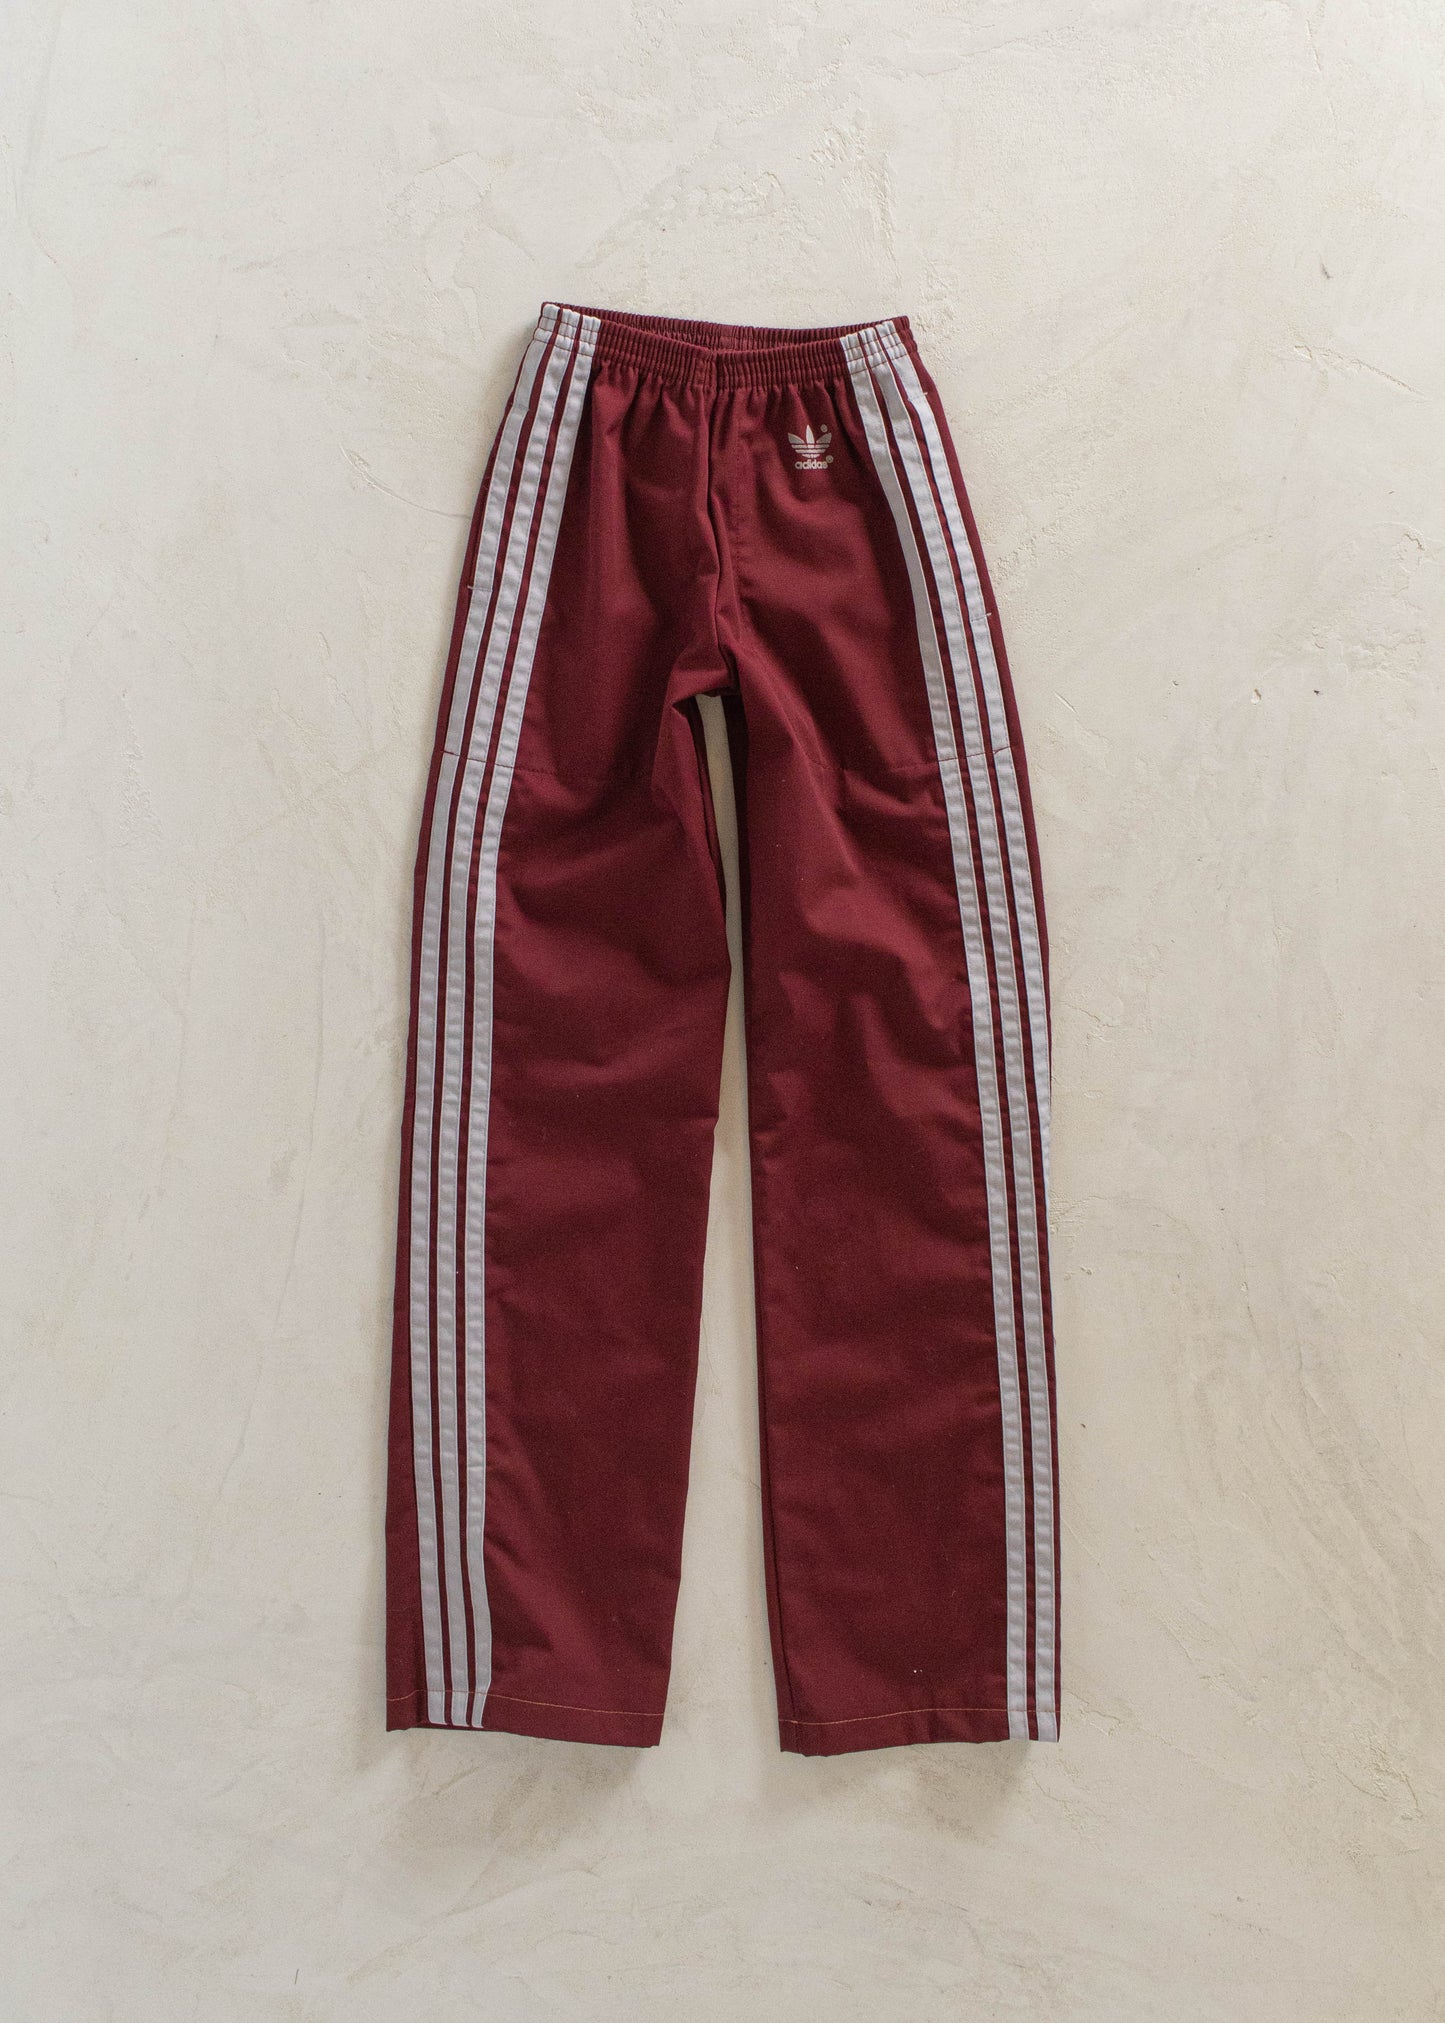 1980s Adidas Track Pants Size 2XS/XS